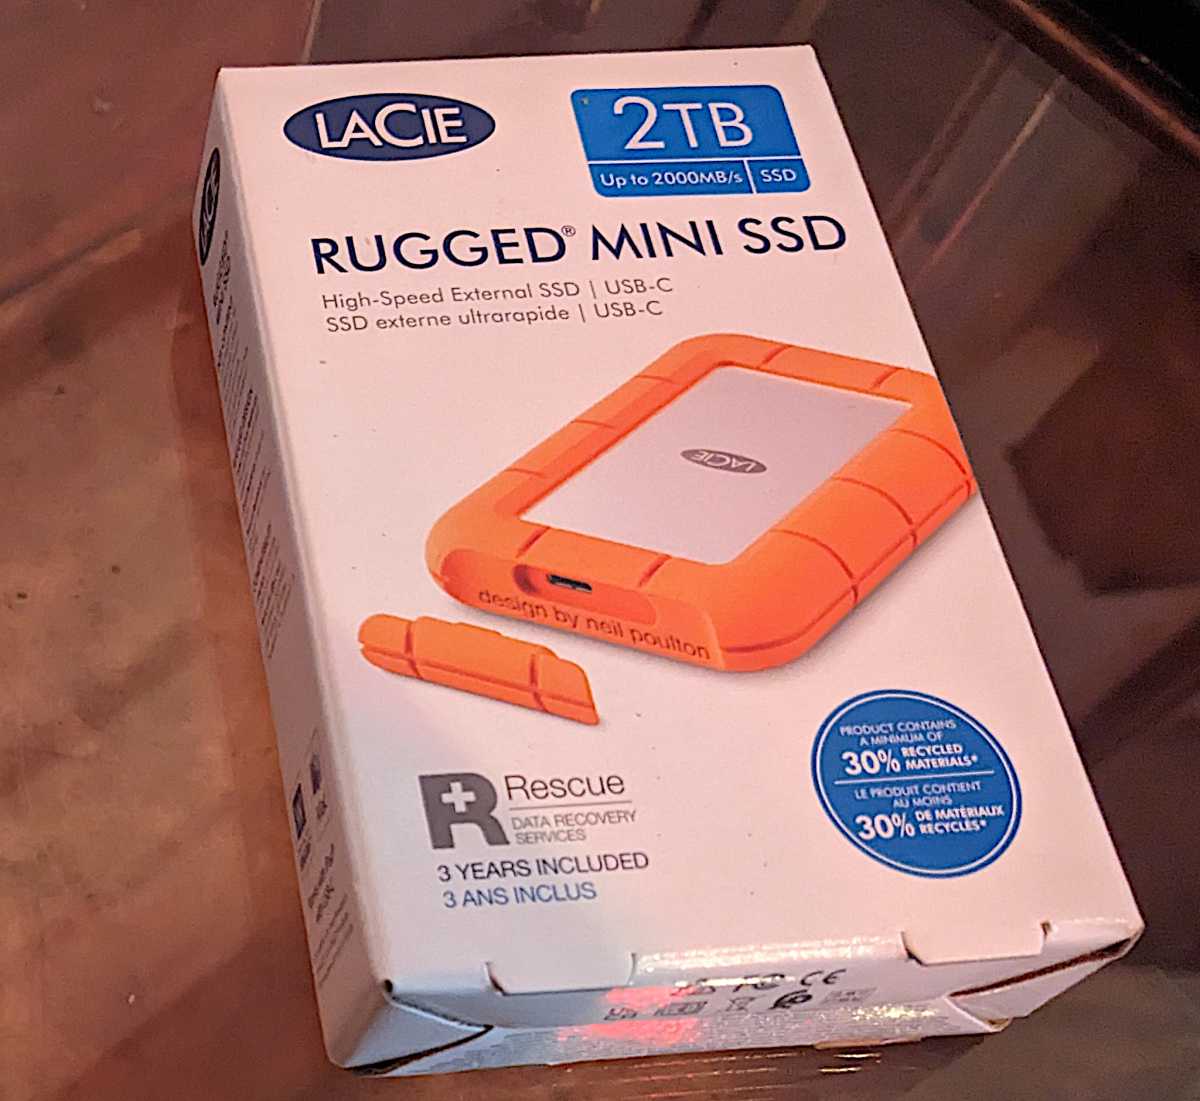 LaCie Rugged Mini SSD